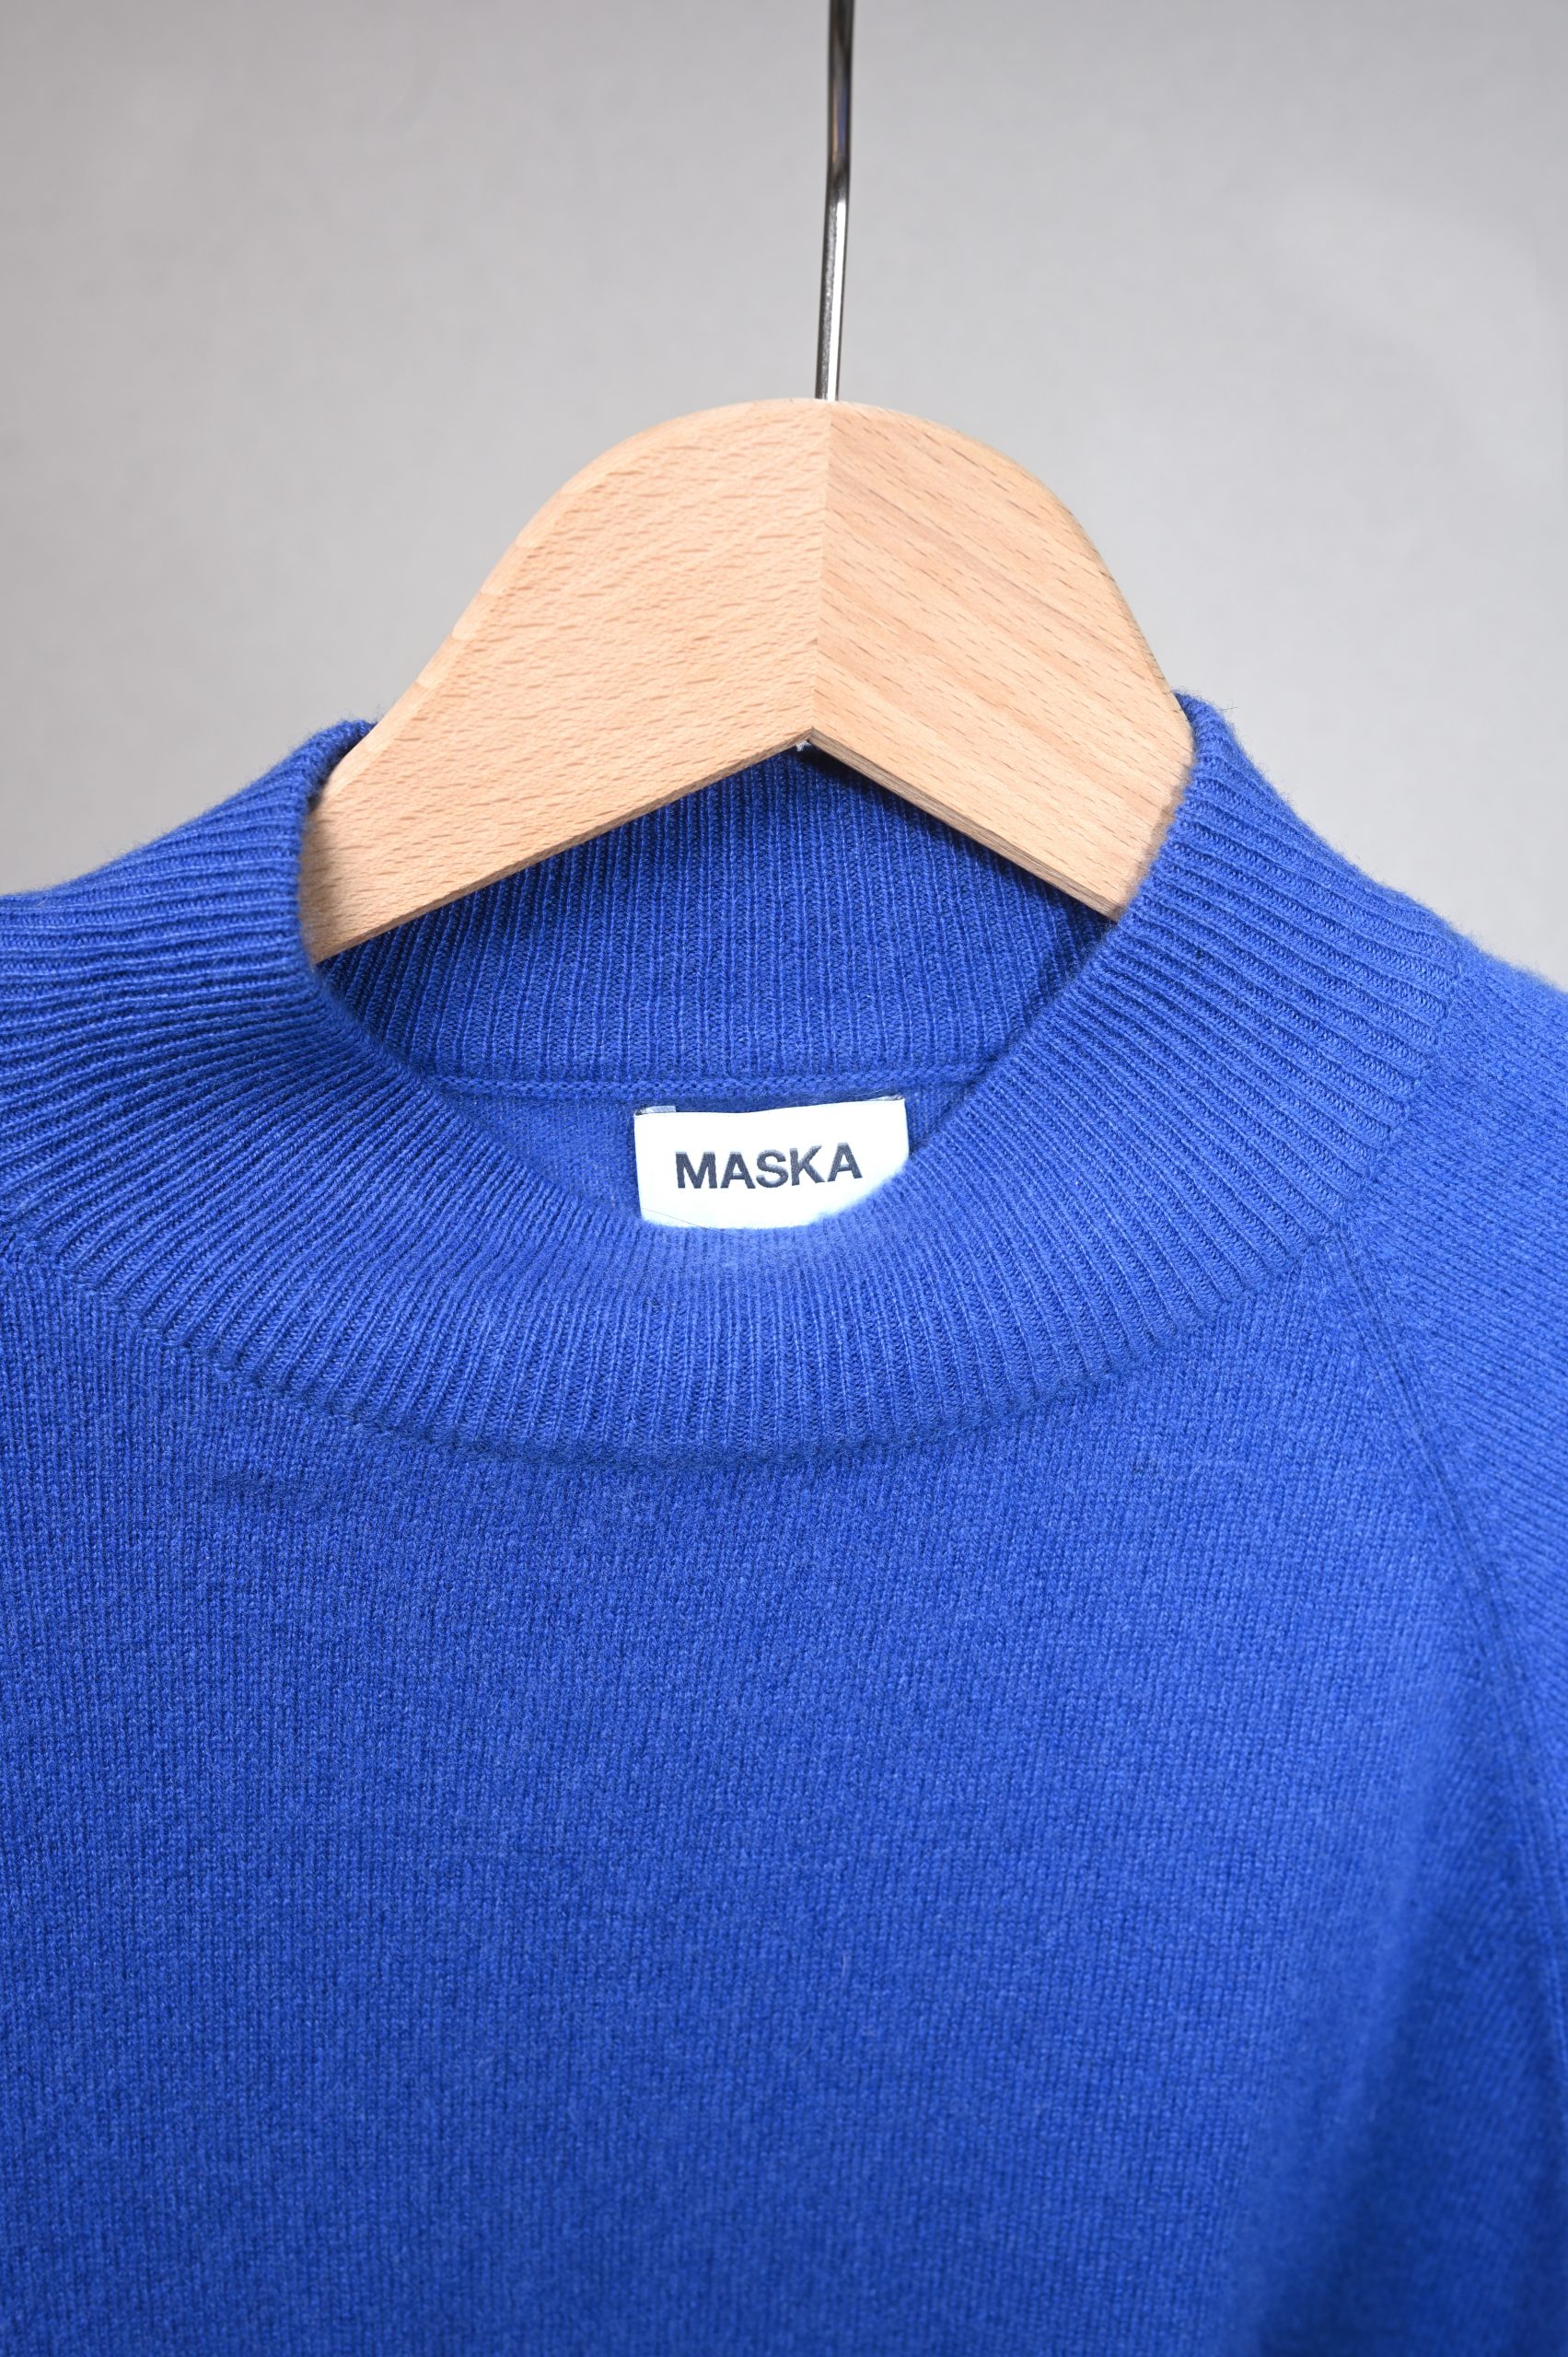 MASKA Pull ADILA Raglan Cashmere wool sweater blue